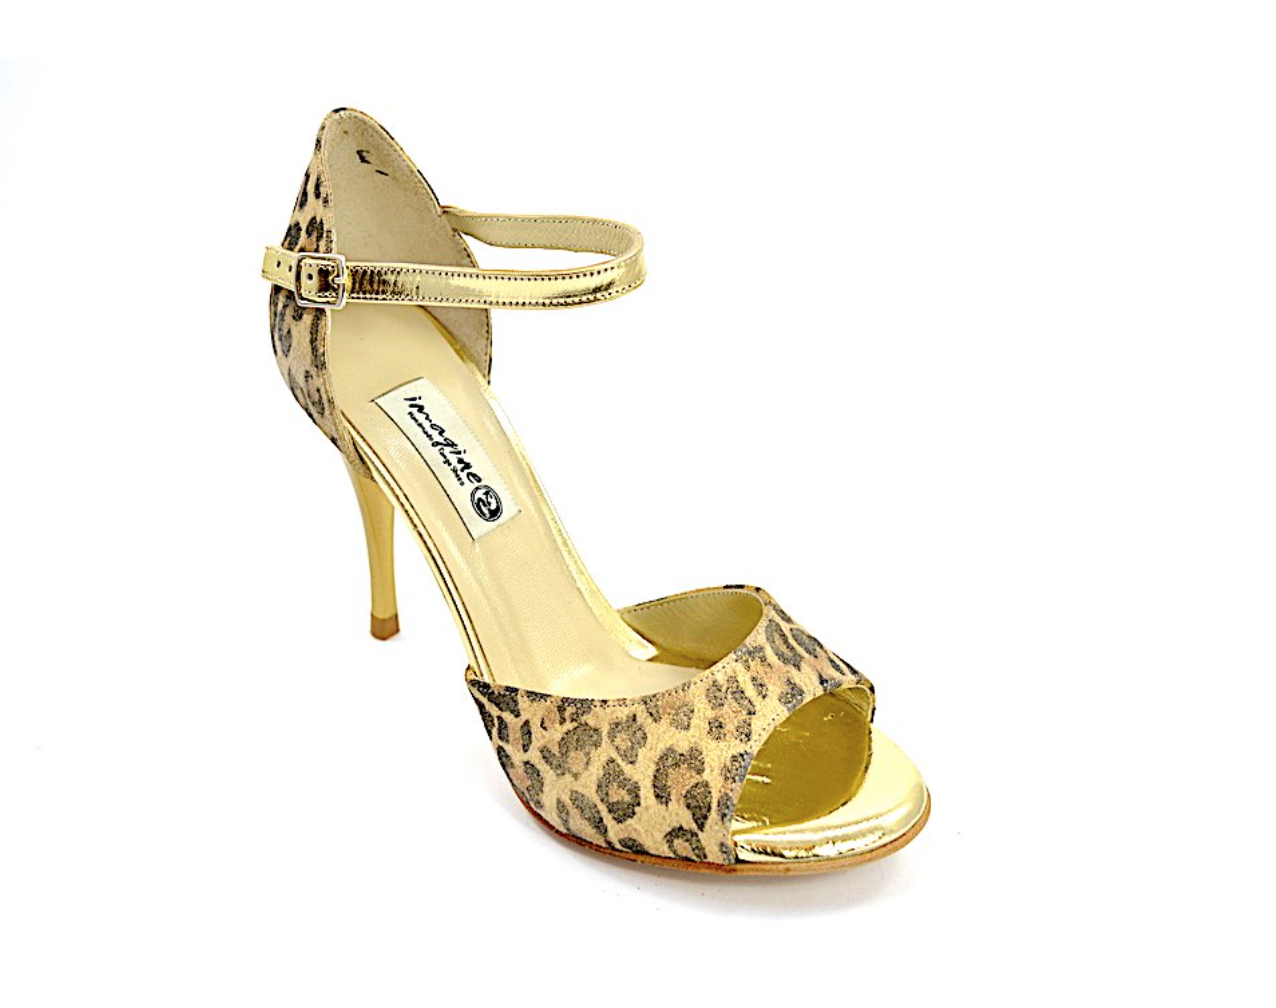 Γυναικείο παπούτσι tango, open toe από λεοπάρ και χρυσό δέρμα